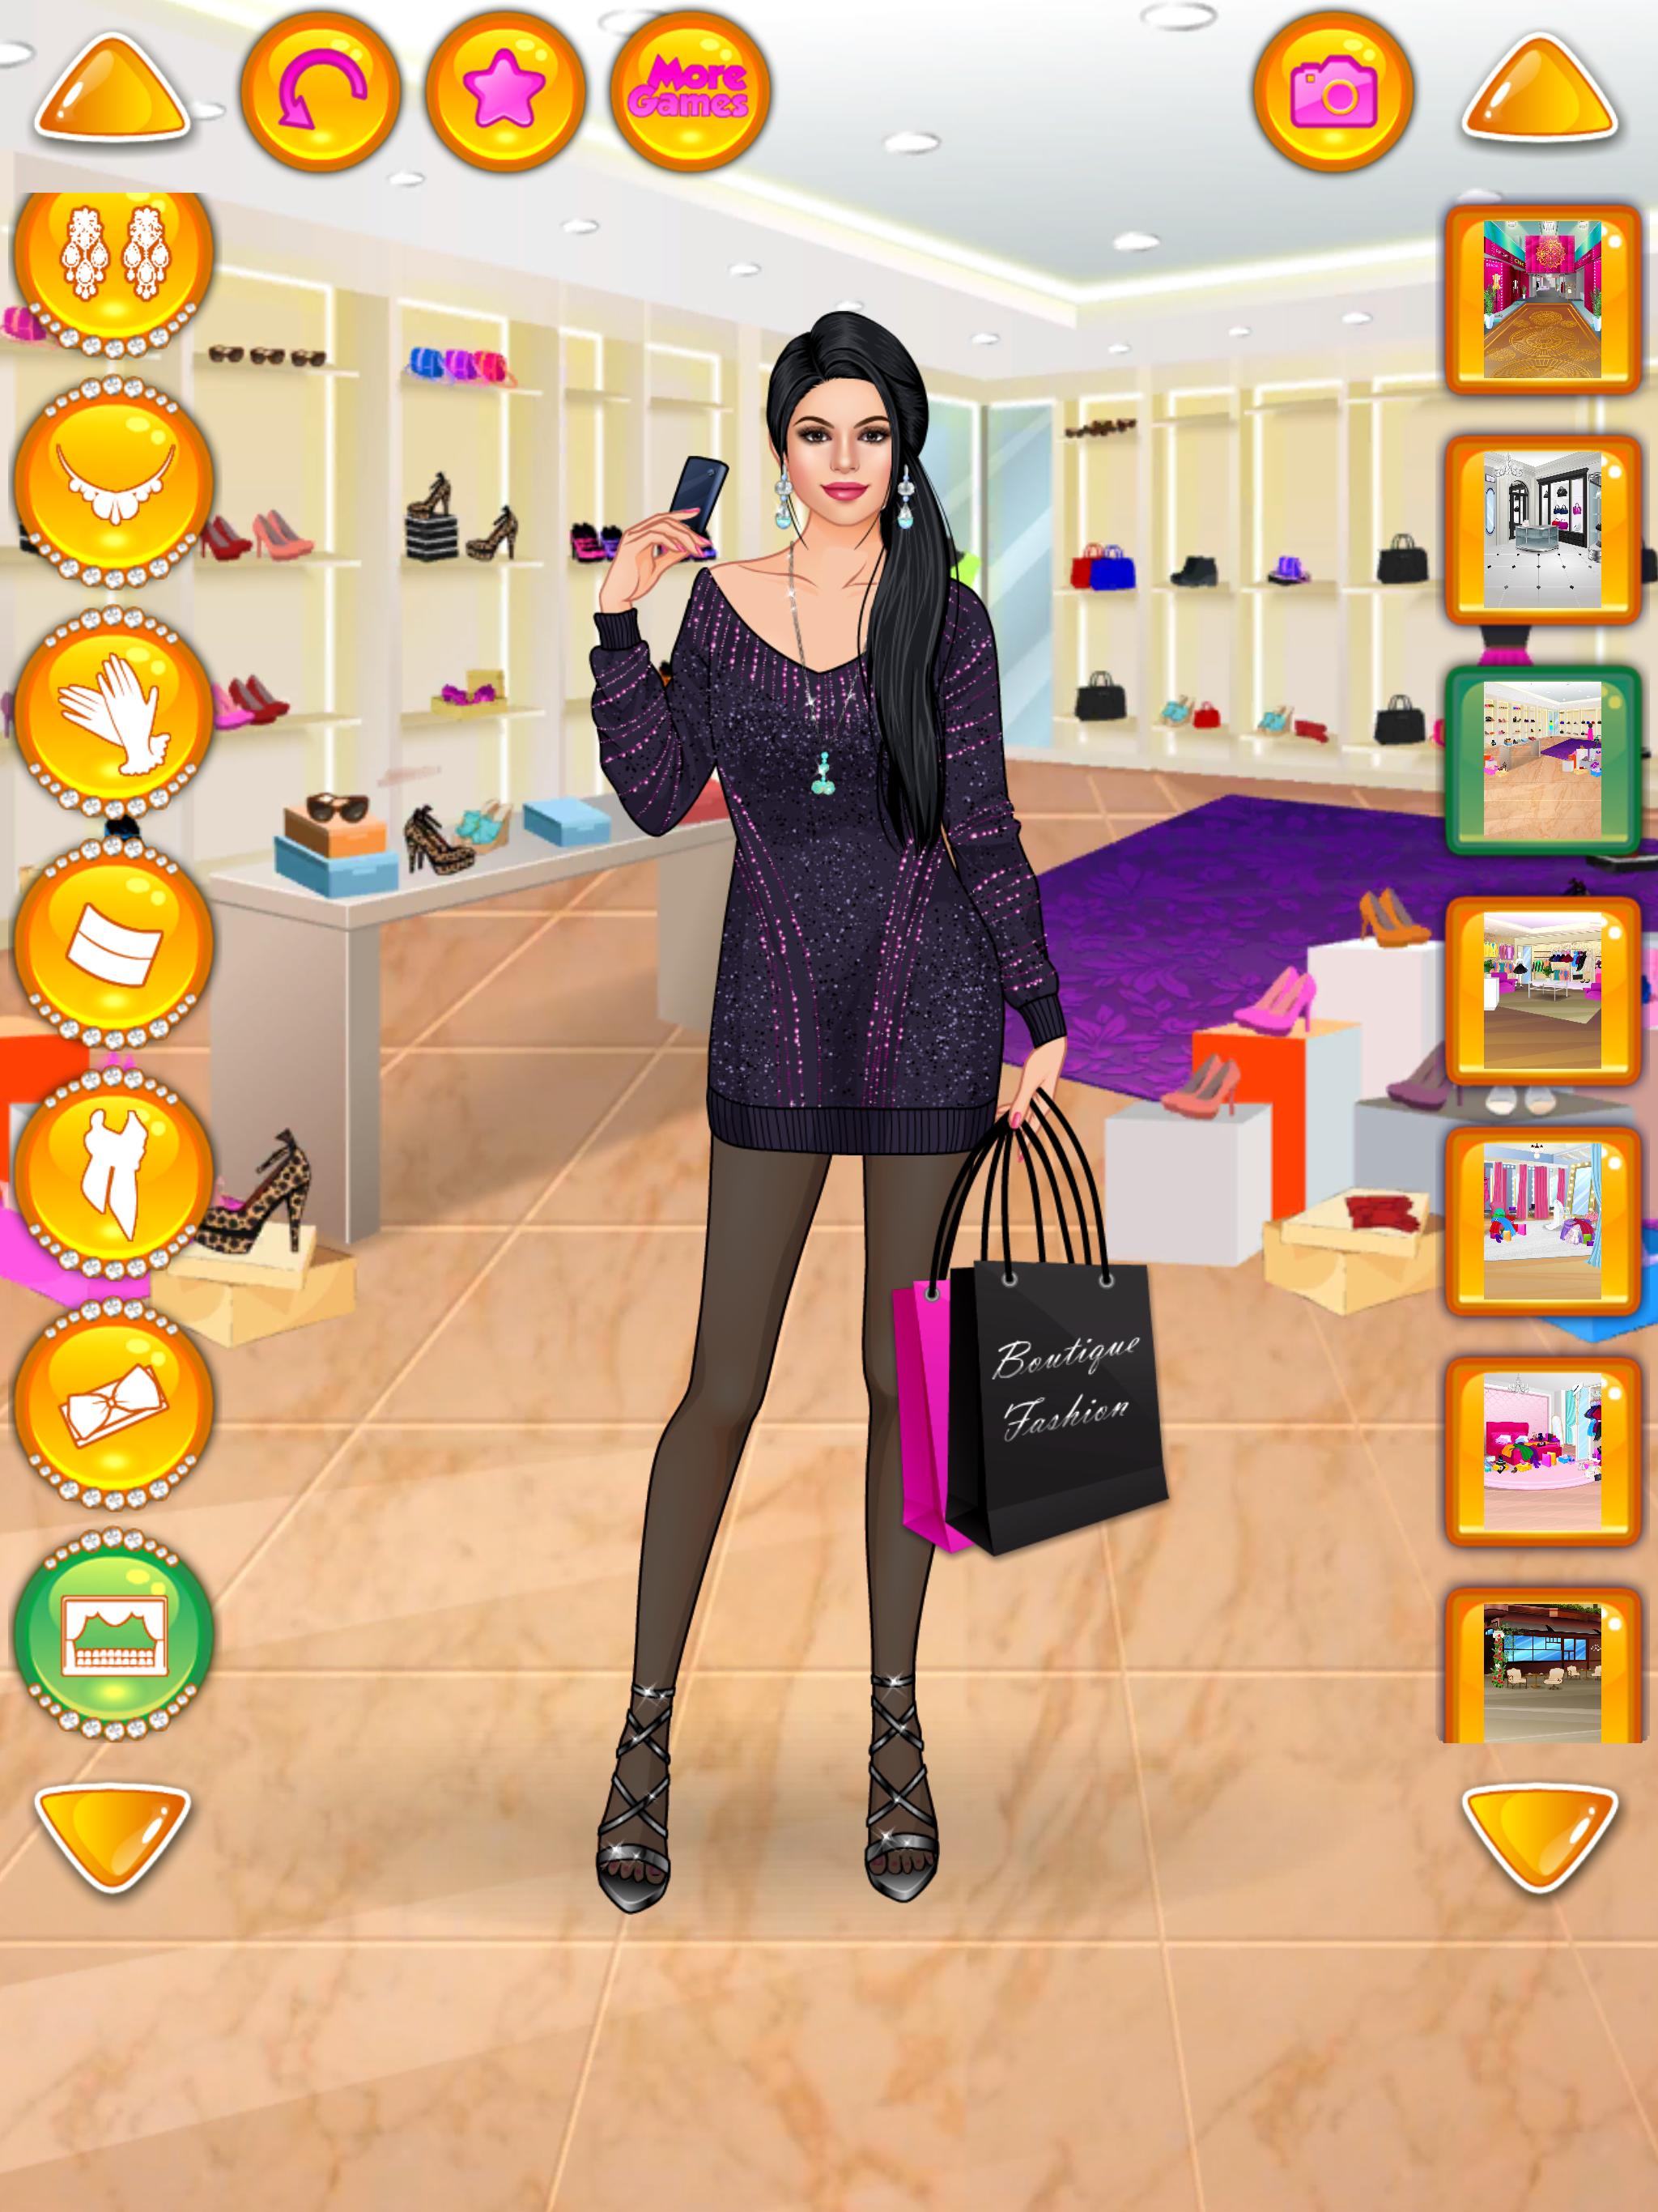 Rich Girl Crazy Shopping - Fashion Game 1.0.7 Screenshot 10